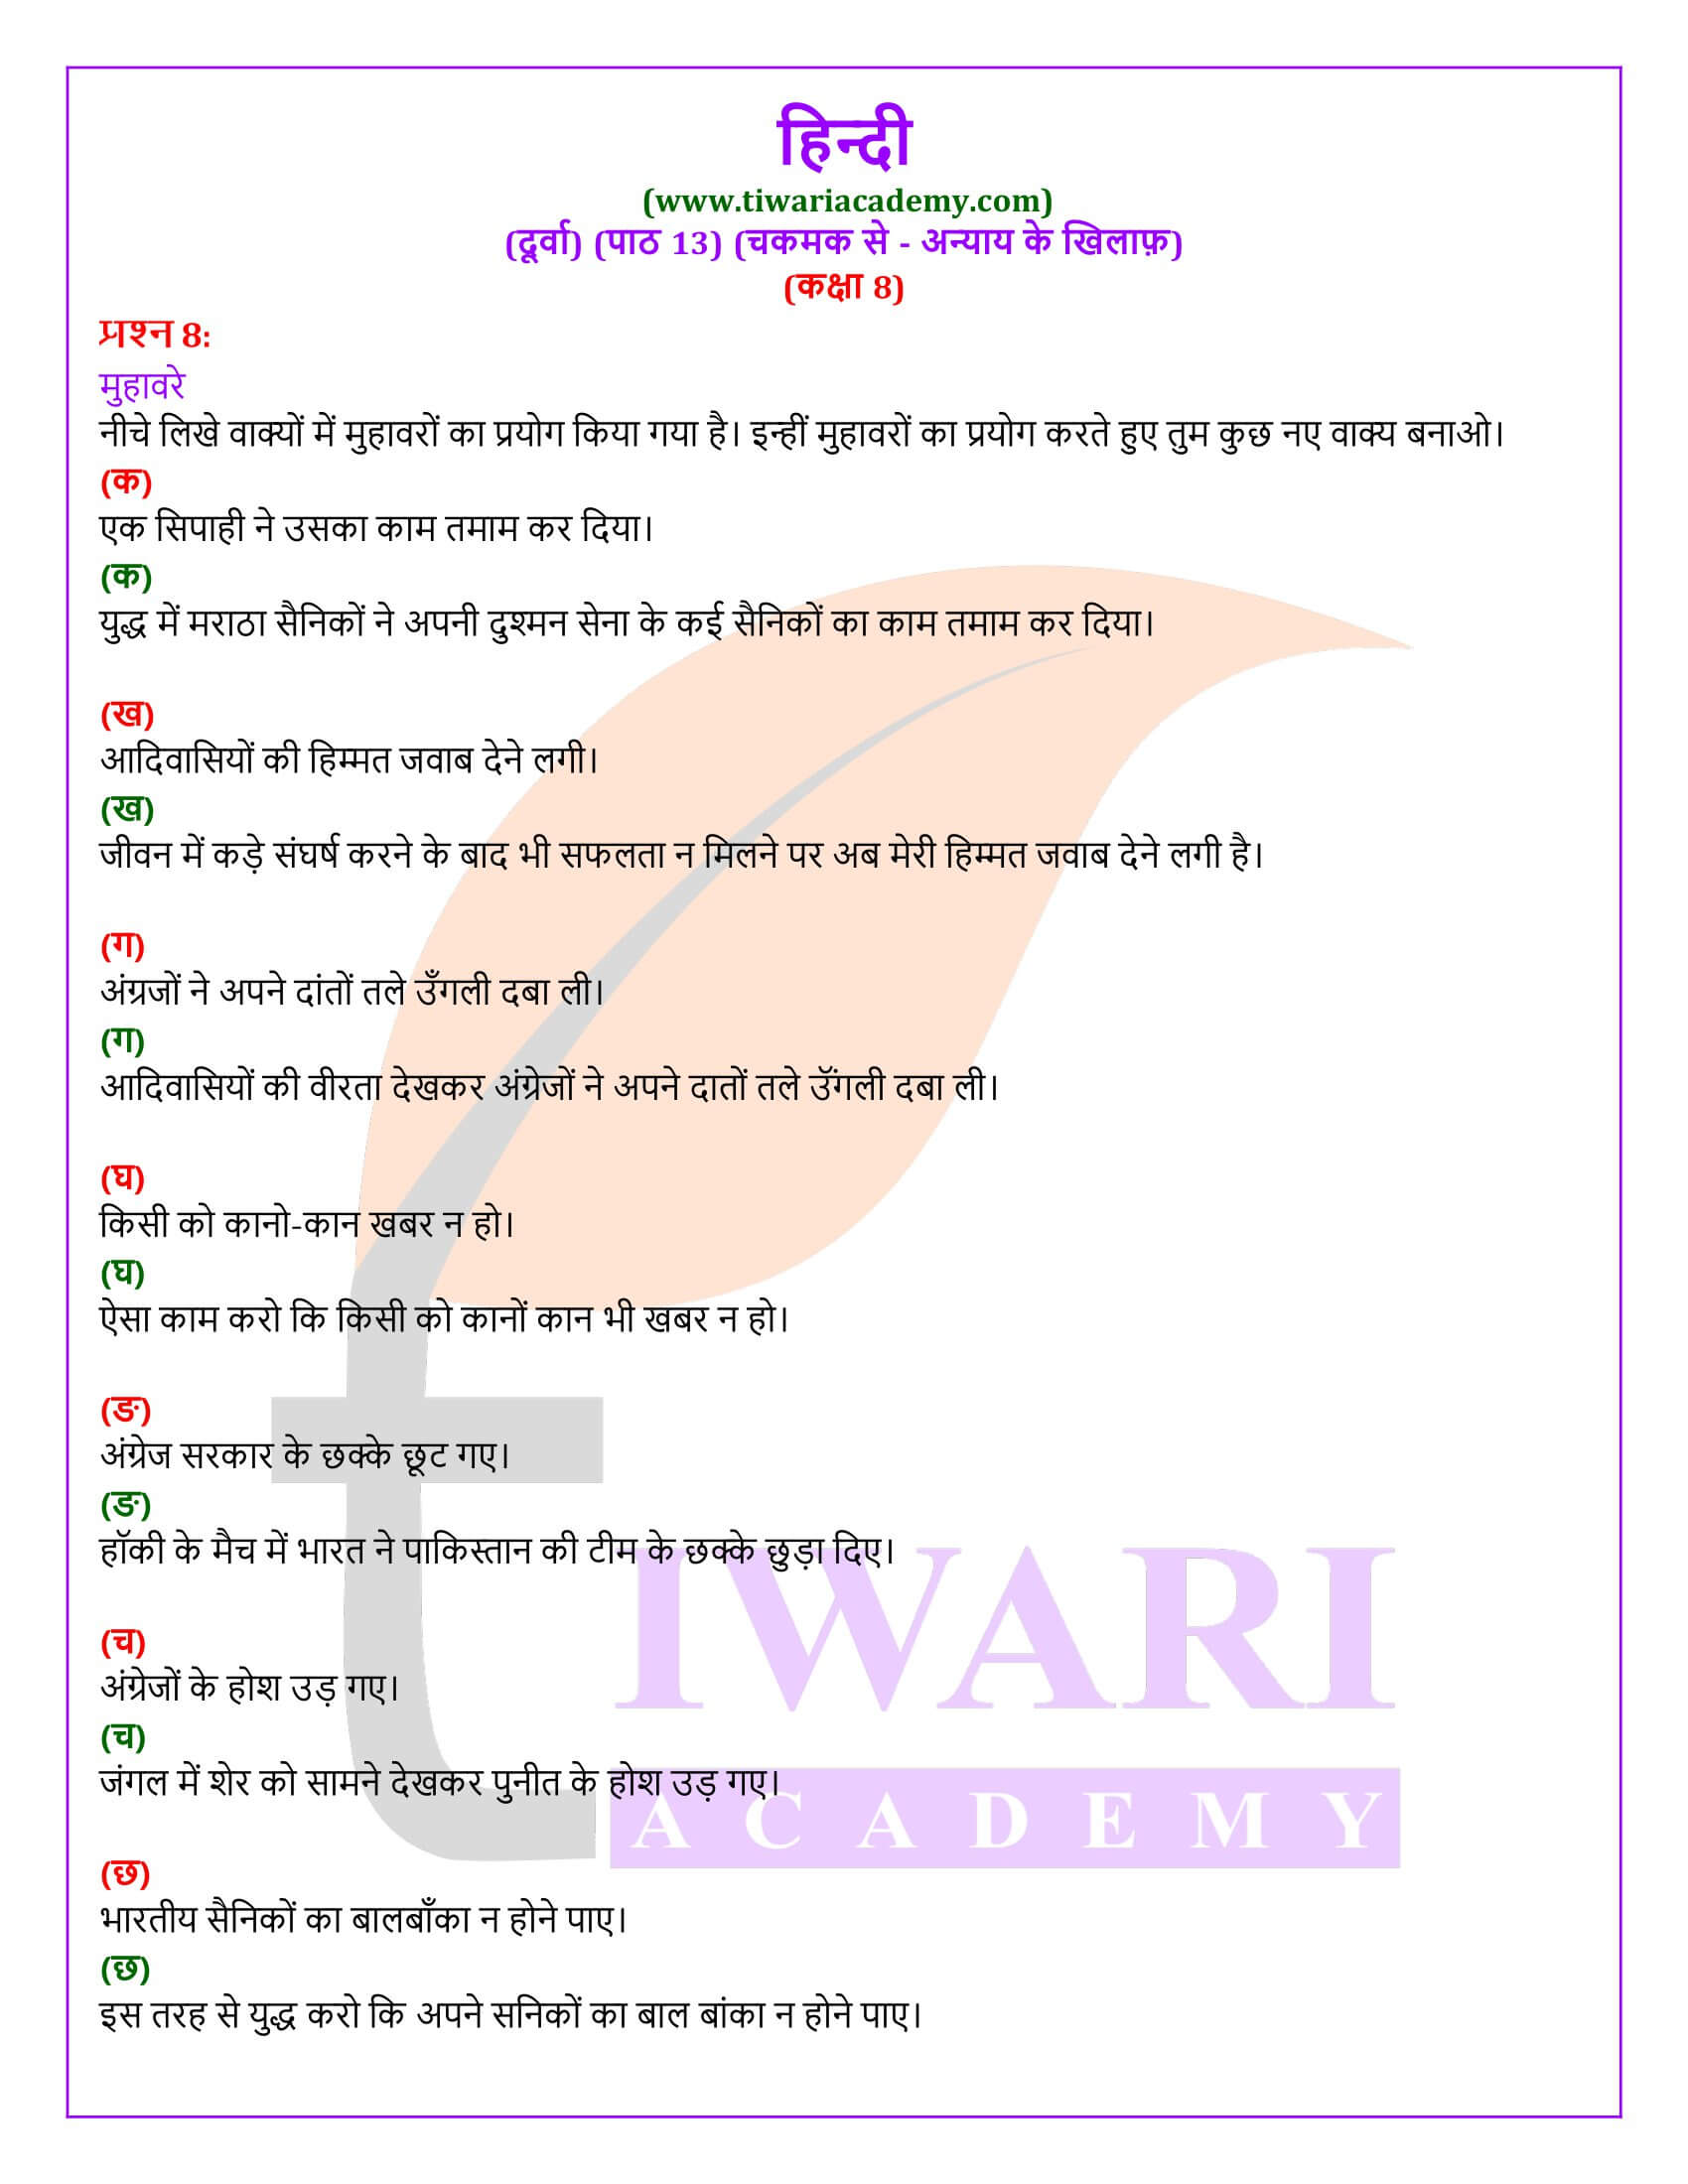 कक्षा 8 हिंदी दूर्वा अध्याय 13 के लिए हल